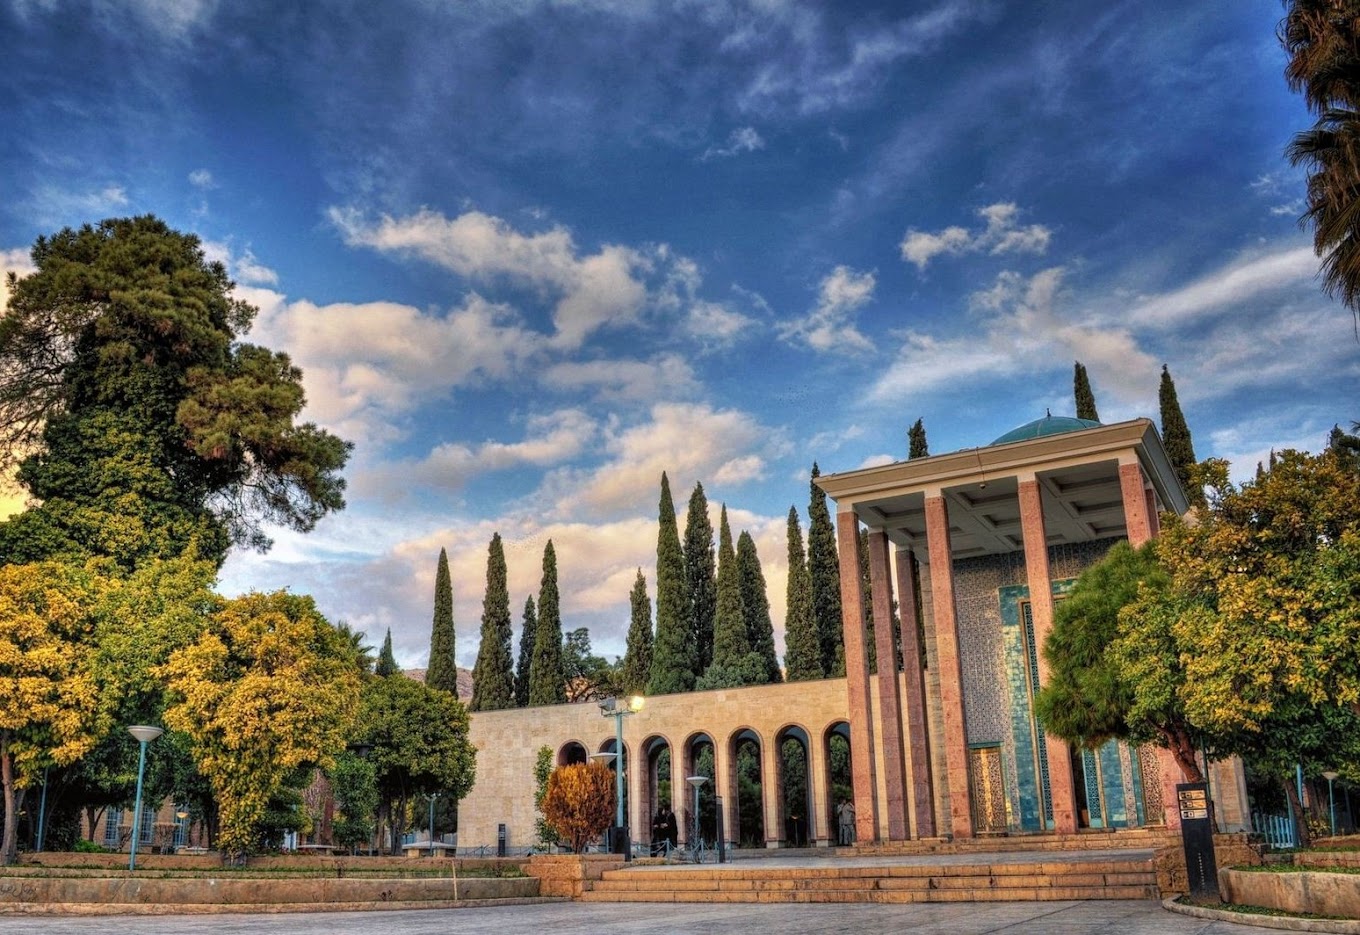 بهترین جاهای دیدنی شیراز را بشناسید
